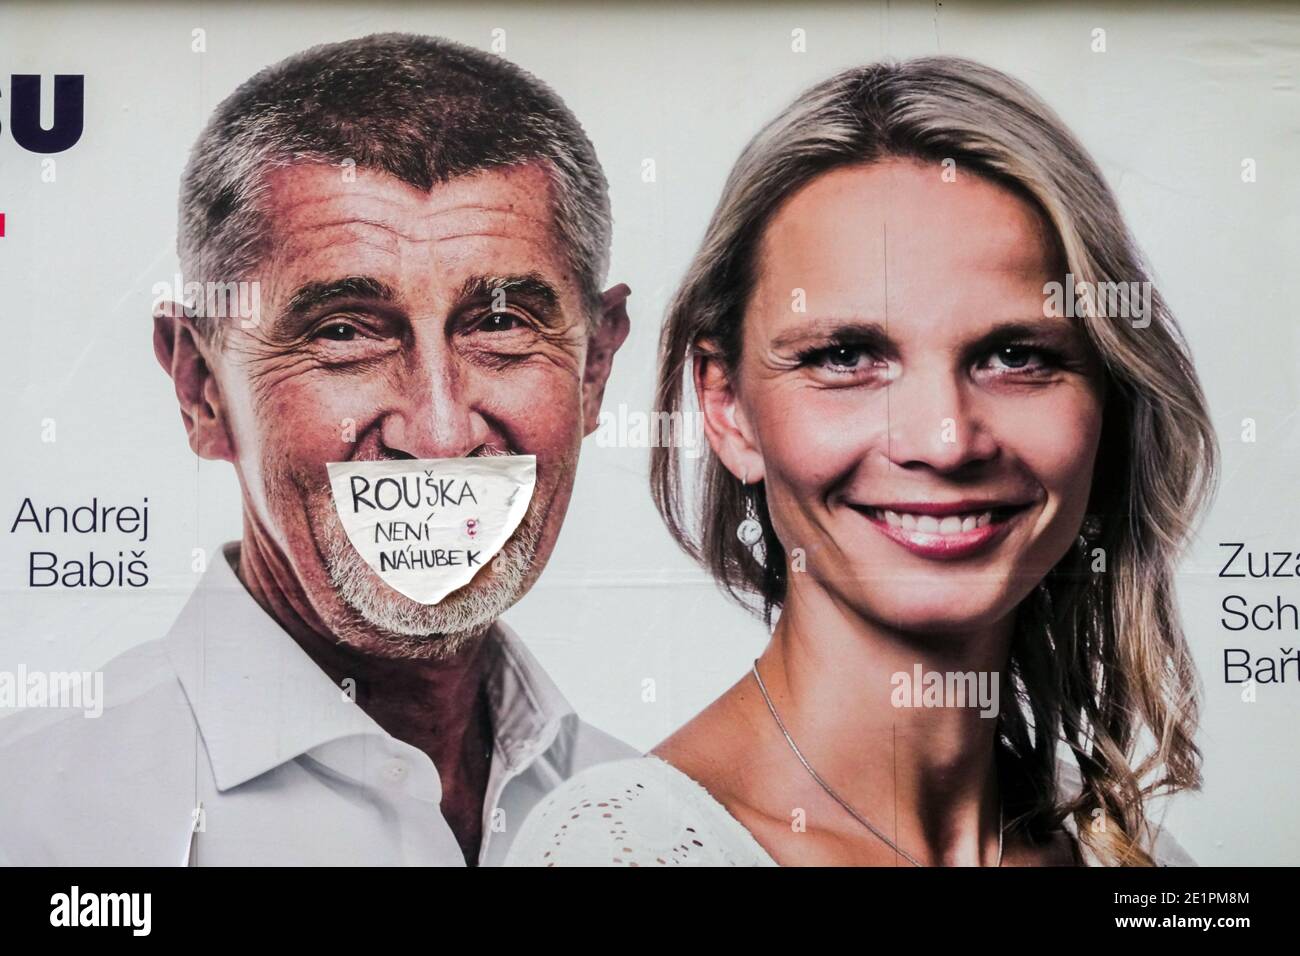 Andrej Babis sur le panneau d'affichage des élections avec un masque facial - Le masque facial n'est pas un museau Banque D'Images